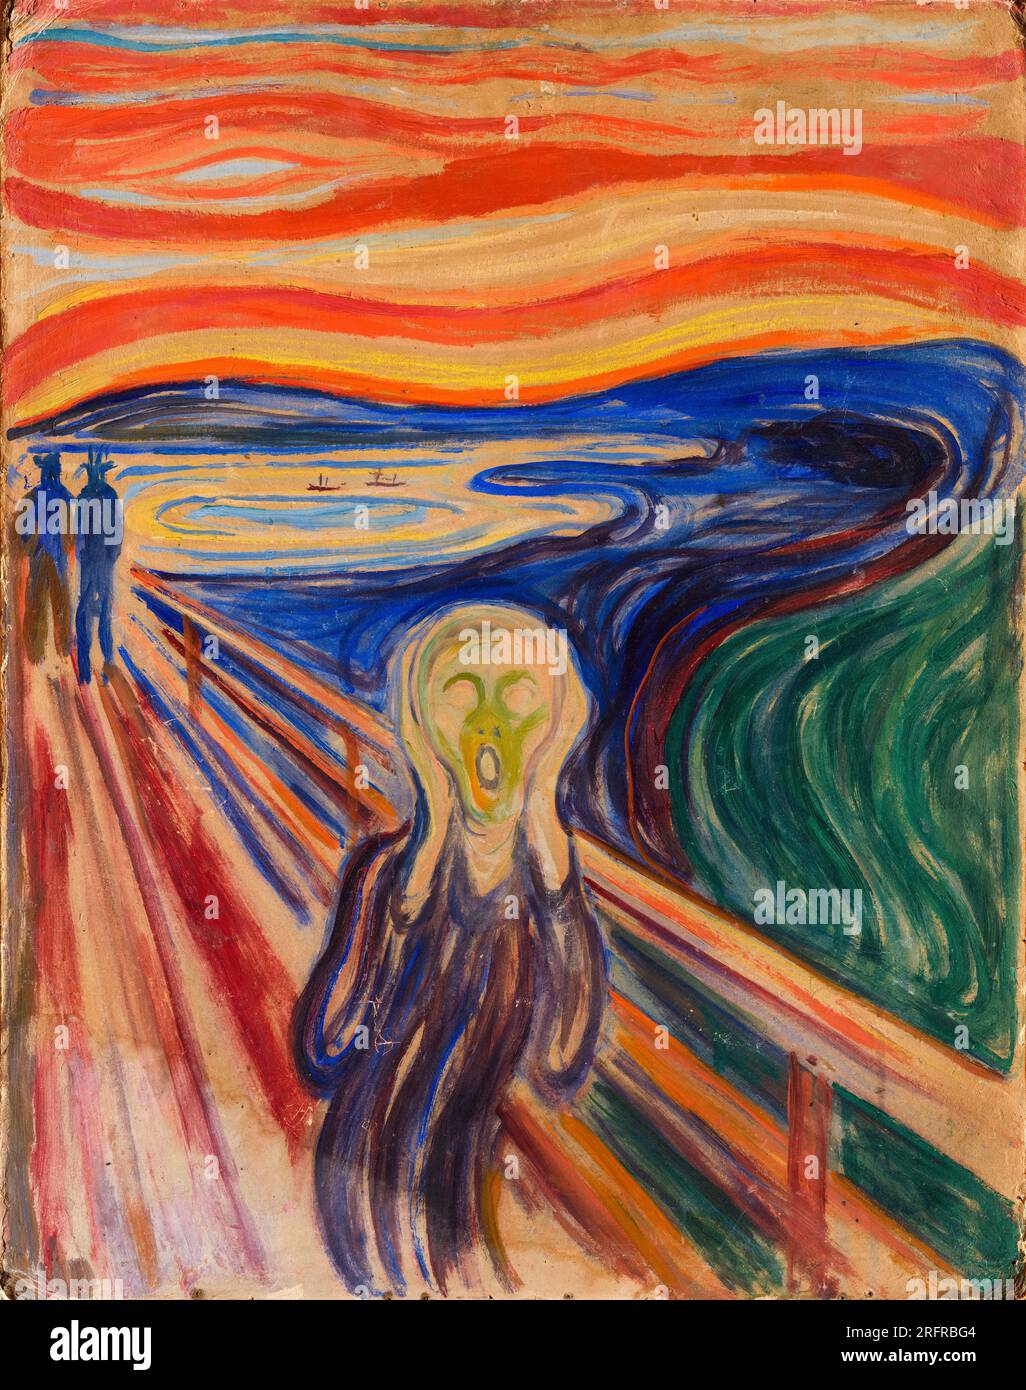 Le cri, Edvard Munch. Peinture à la tempera et à l'huile sur carton, 1910 Banque D'Images